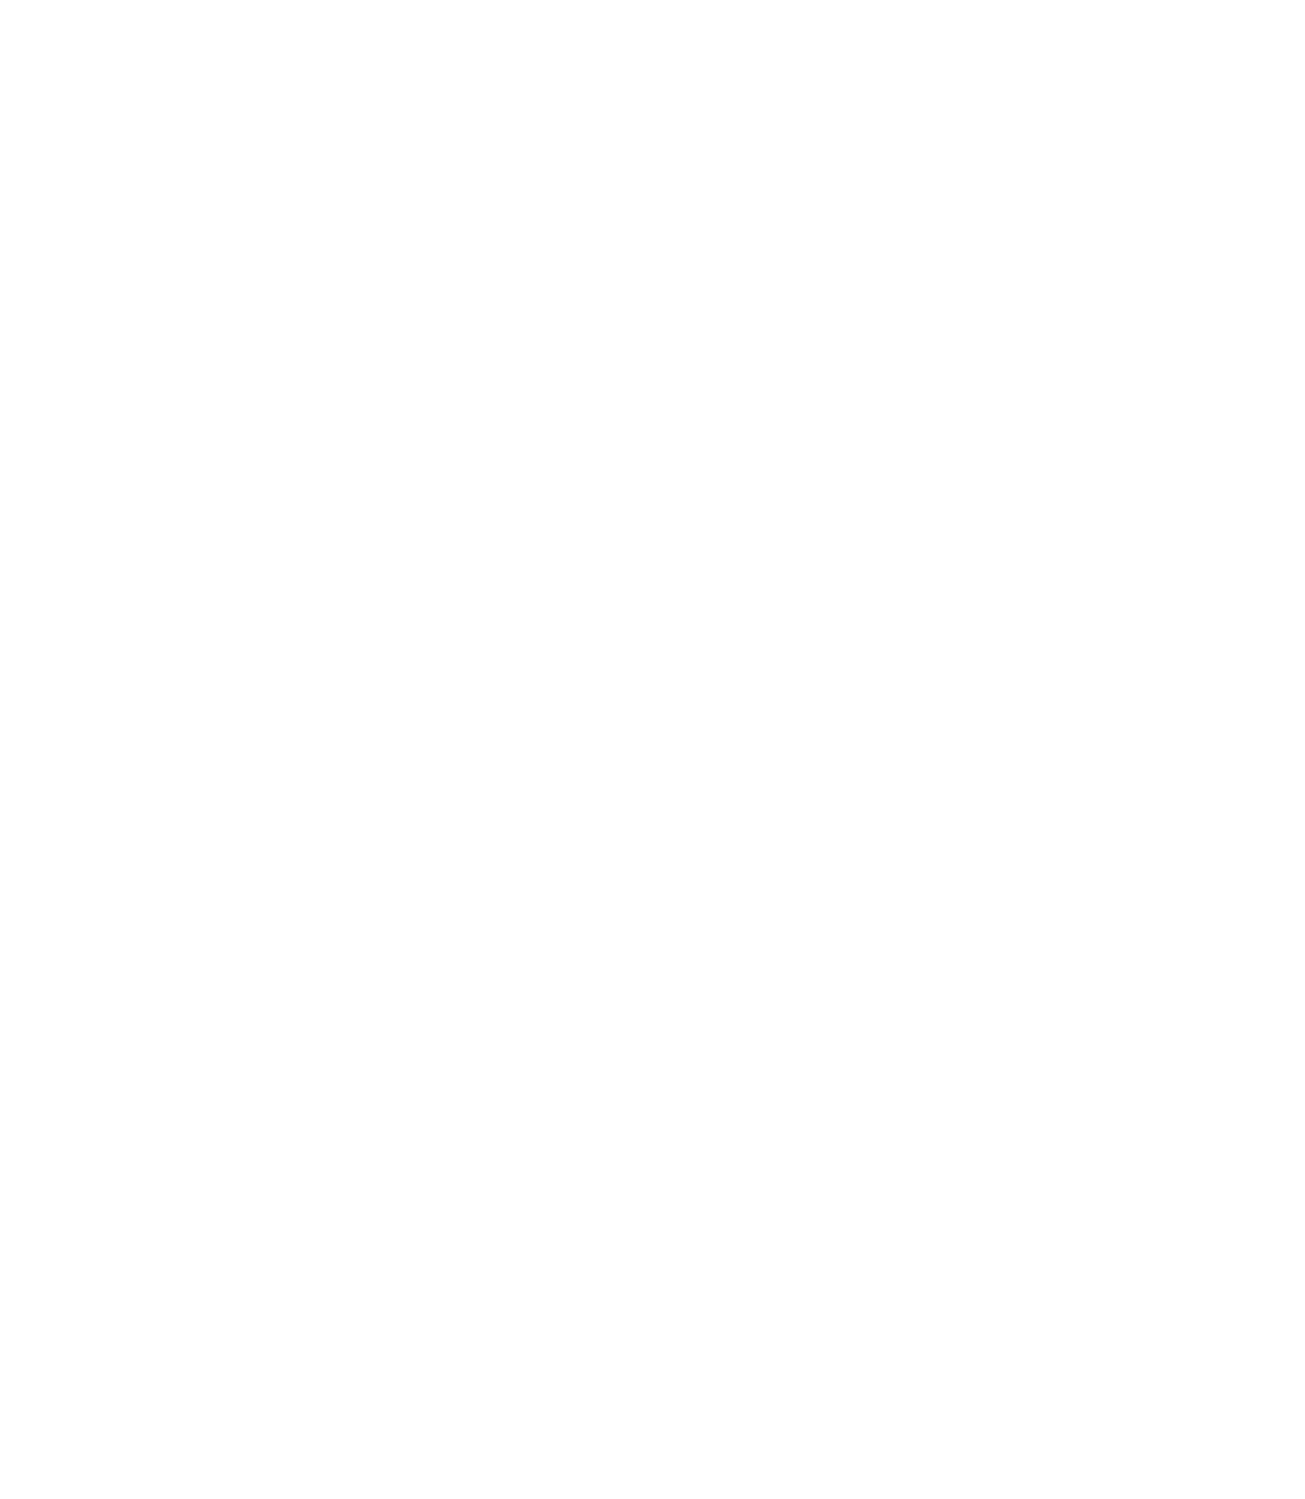 Bonhoeffer's Cafe & Espresso